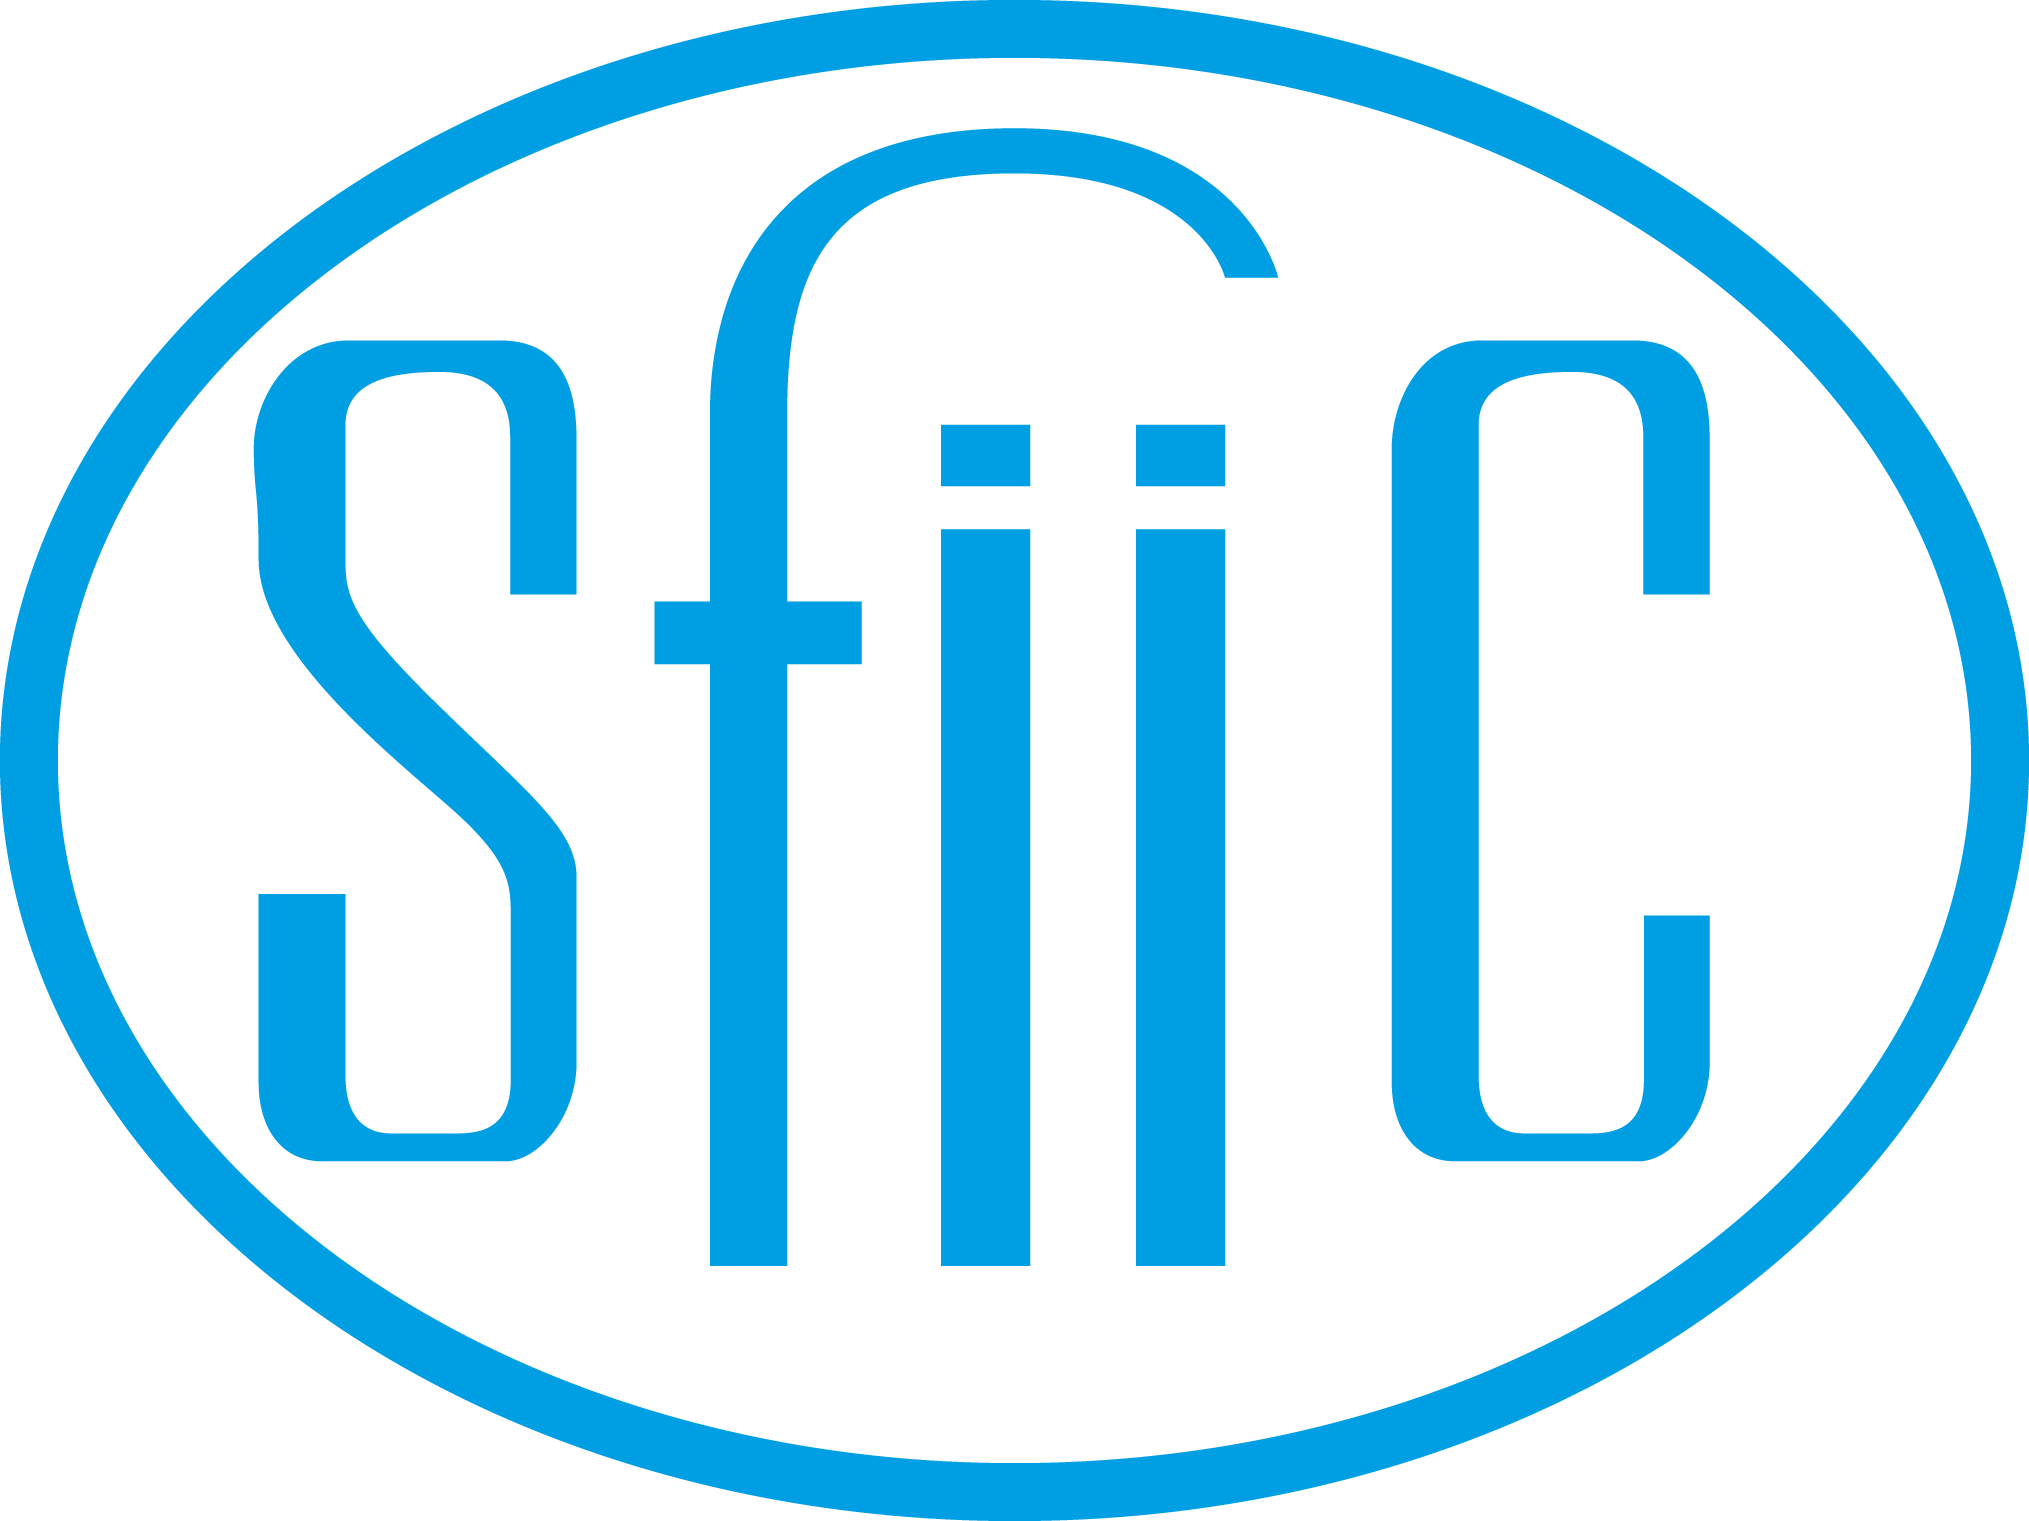 sfiic-logo.png